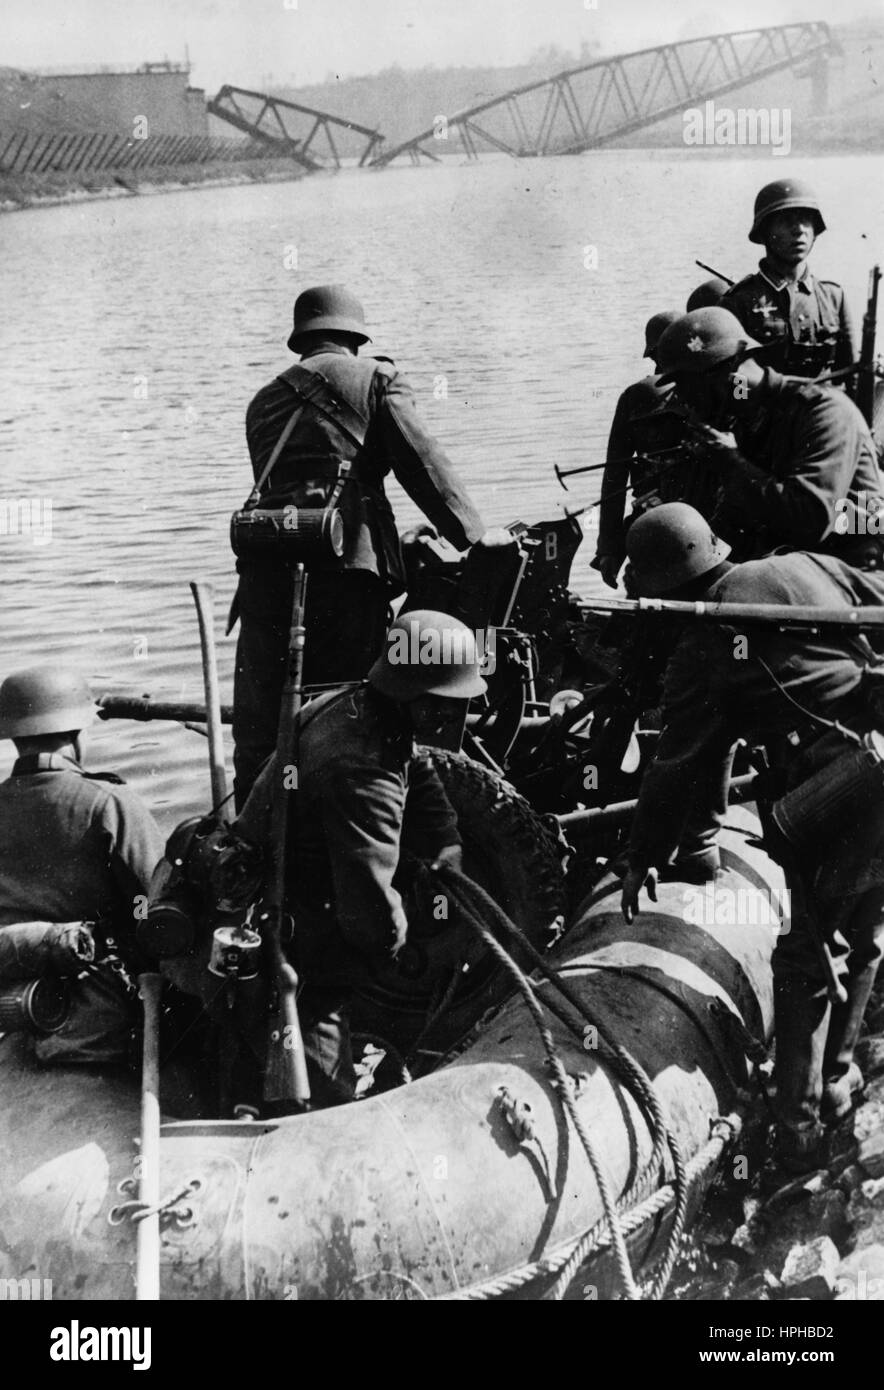 Das Bild der Nazi-Propaganda zeigt deutsche Wehrmachtssoldaten, die einen Kanal auf einem Luftboot überqueren. Aufgenommen im Mai 1940. Fotoarchiv für Zeitgeschichte - NICHT FÜR DEN KABELDIENST - | weltweite Verwendung Stockfoto